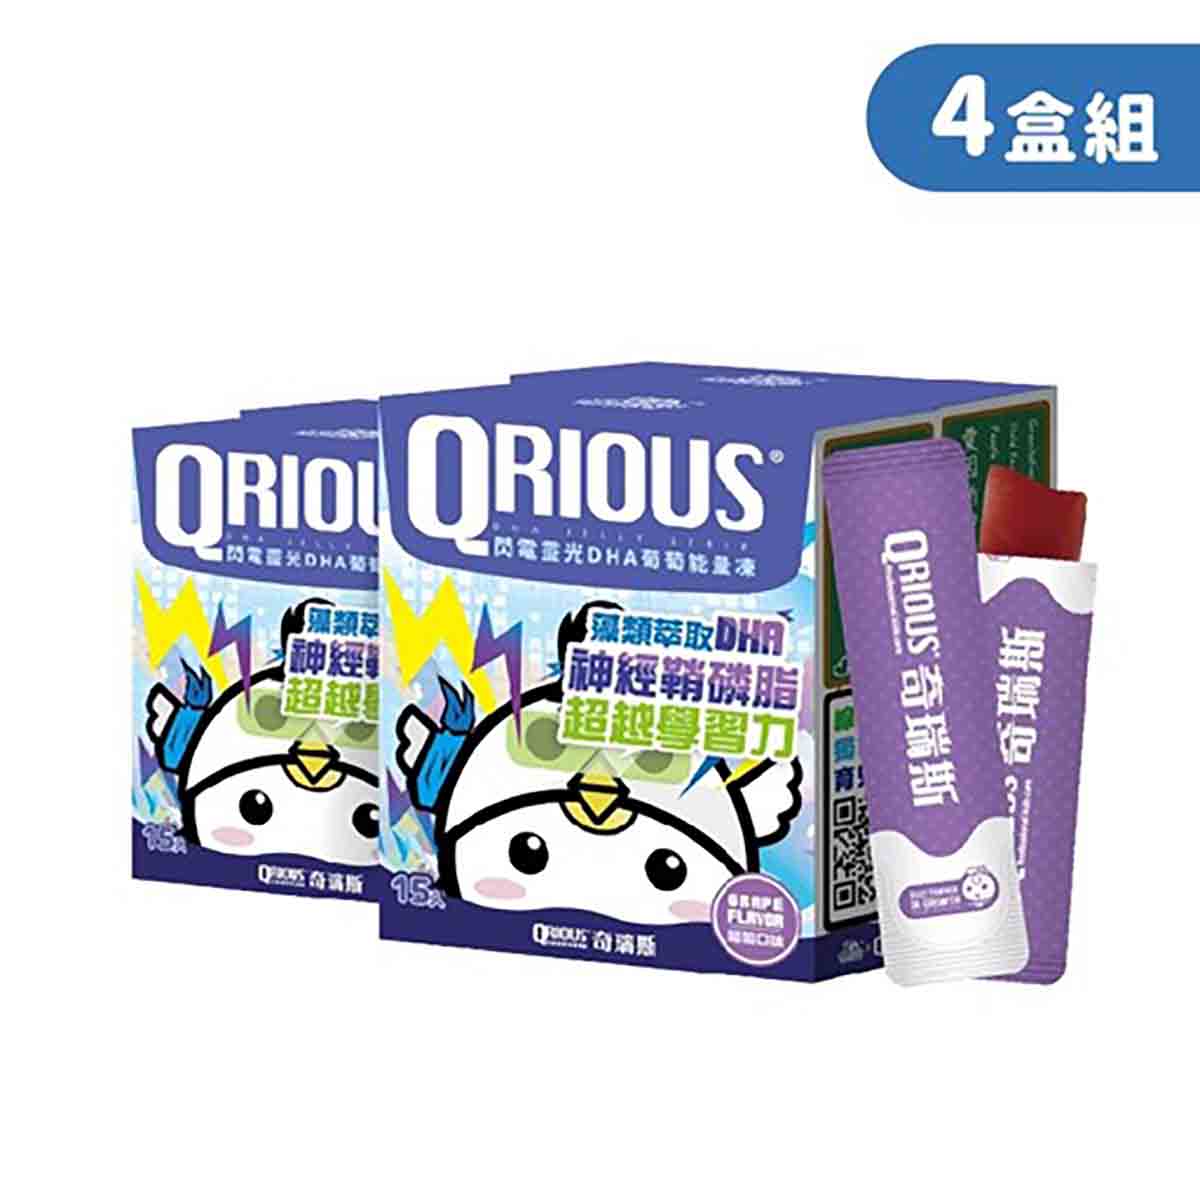 【快轉學習力】QRIOUS®奇瑞斯閃電靈光 DHA＋神經鞘磷脂葡萄能量凍 (4盒)